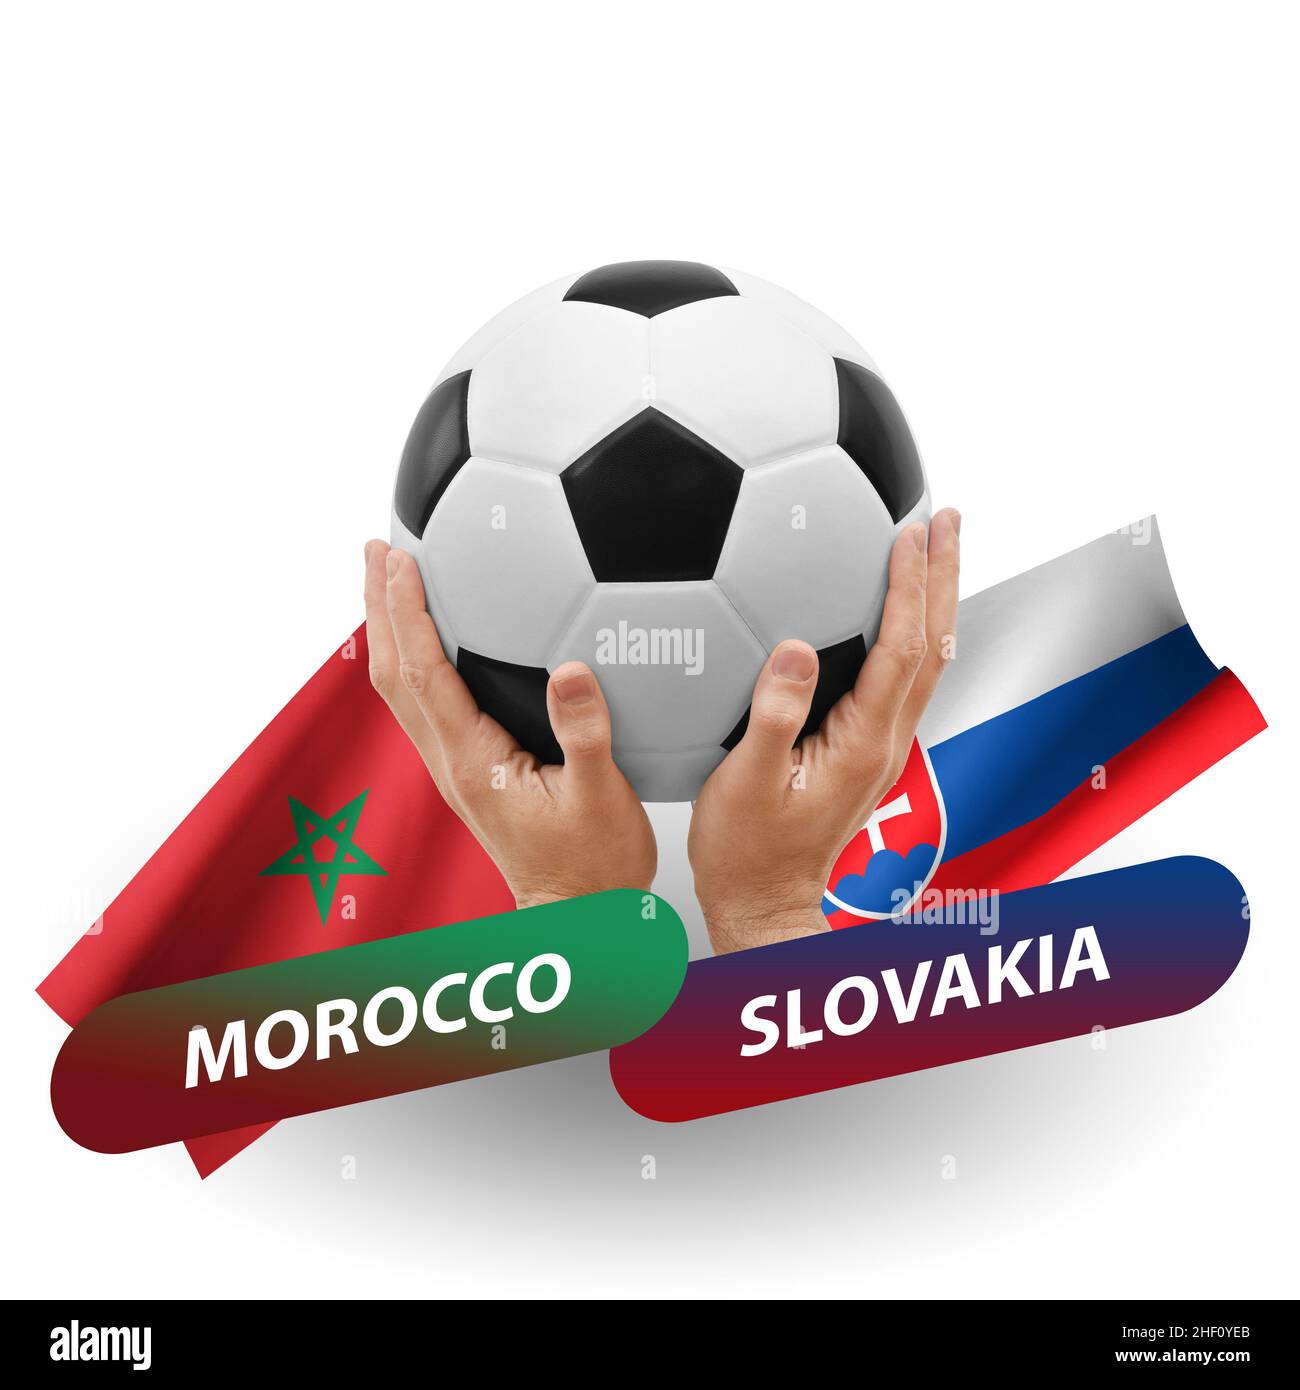 Slovaquie maroc Banque de photographies et d'images à haute résolution -  Alamy